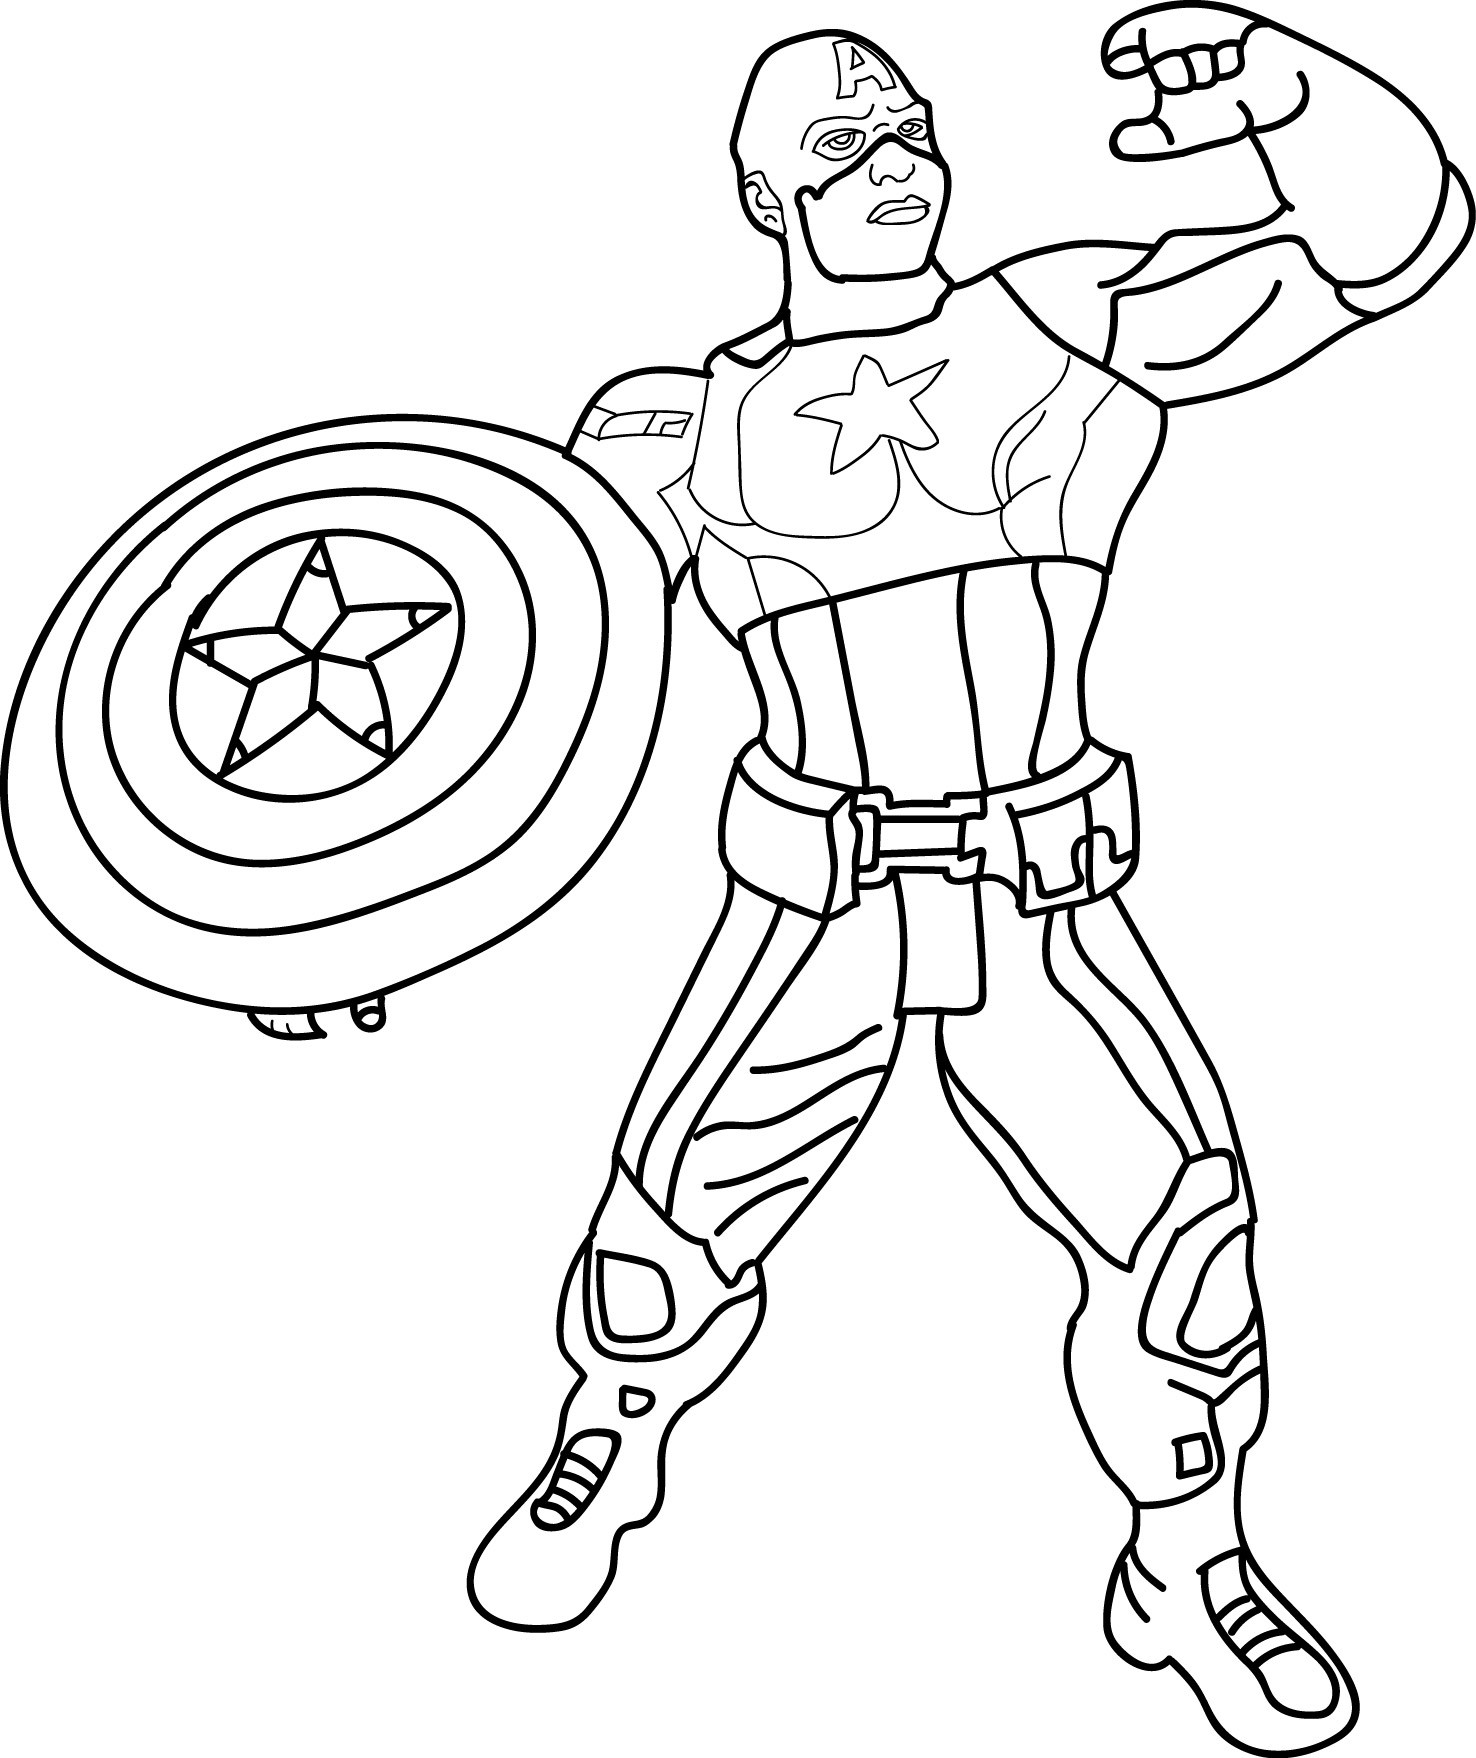 Captain America Coloring Sheet
 Avenger Kids Cartoon Captain America Toy Coloring Page